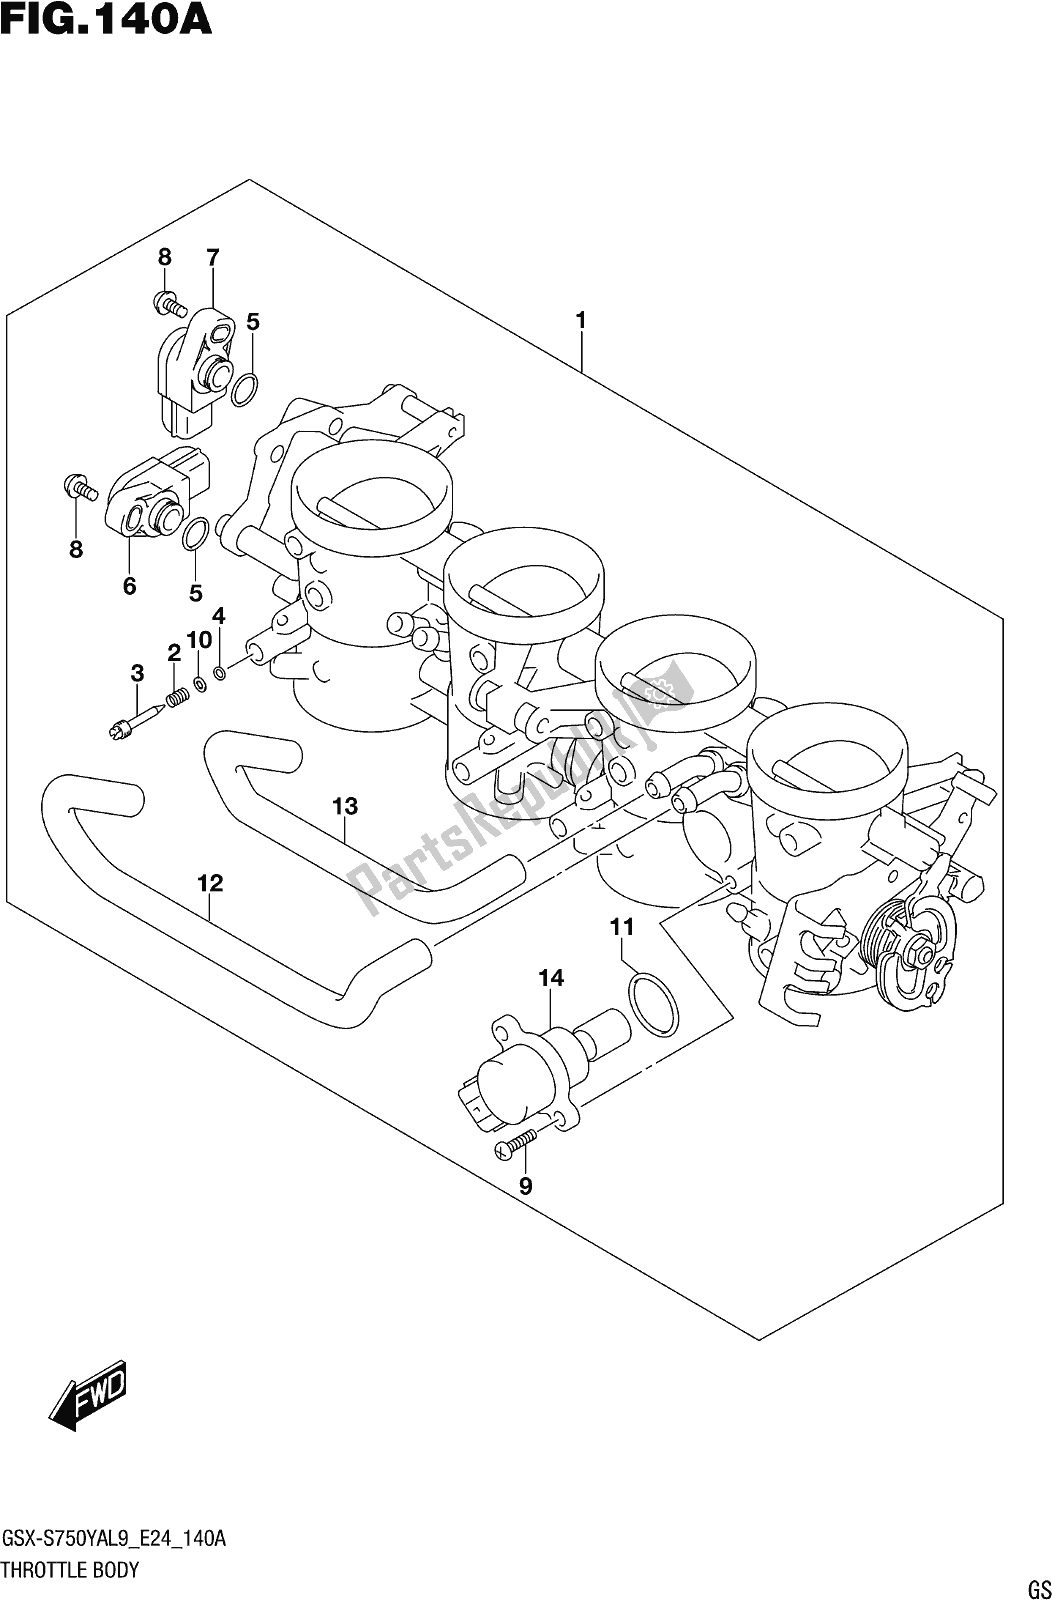 Alle onderdelen voor de Fig. 140a Throttle Body van de Suzuki Gsx-s 750 ZA 2019